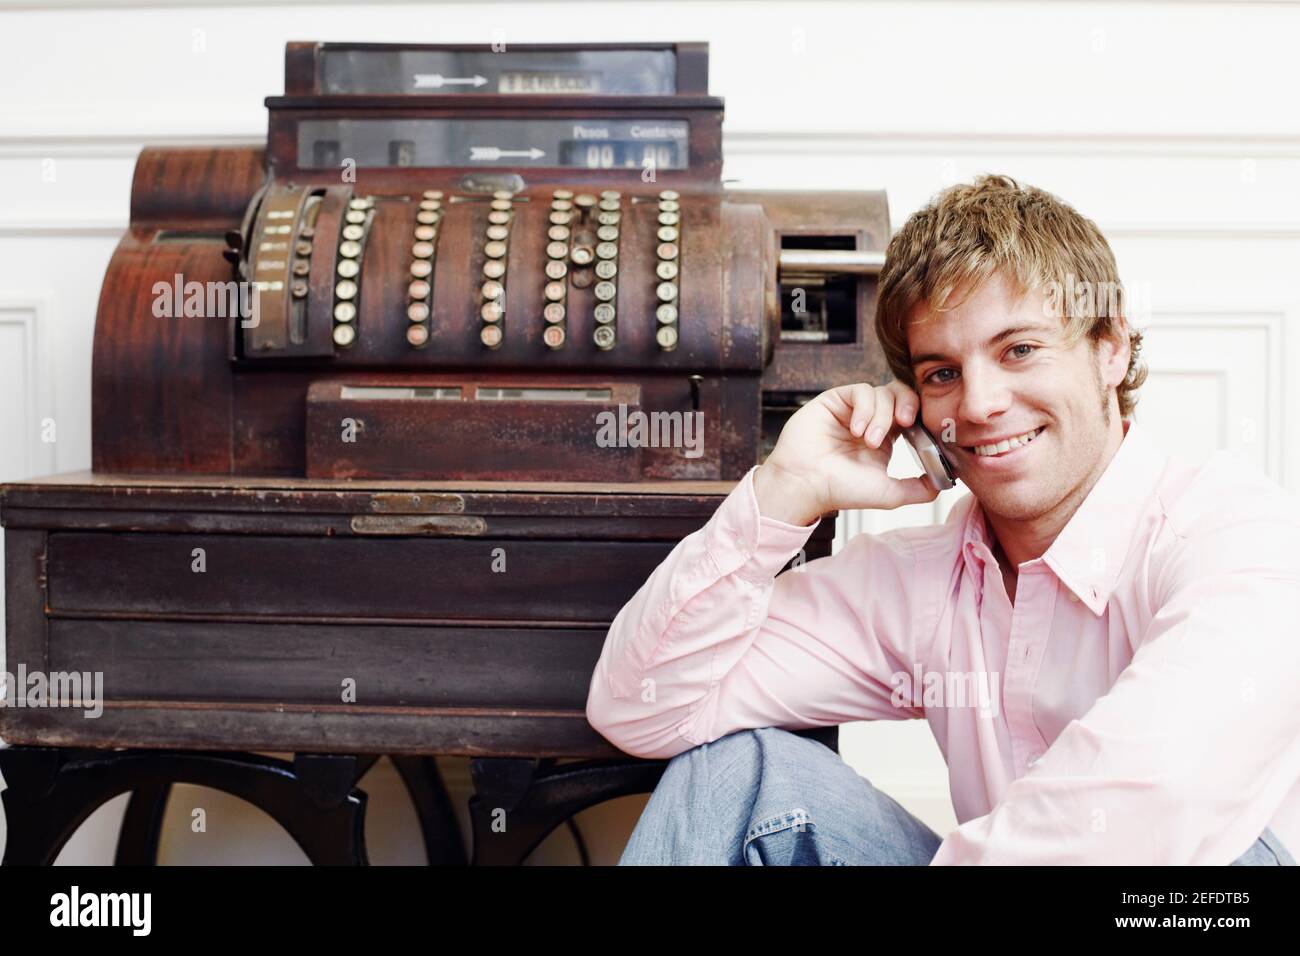 Portrait d'un jeune homme parlant sur un téléphone portable près d'une machine à écrire Banque D'Images